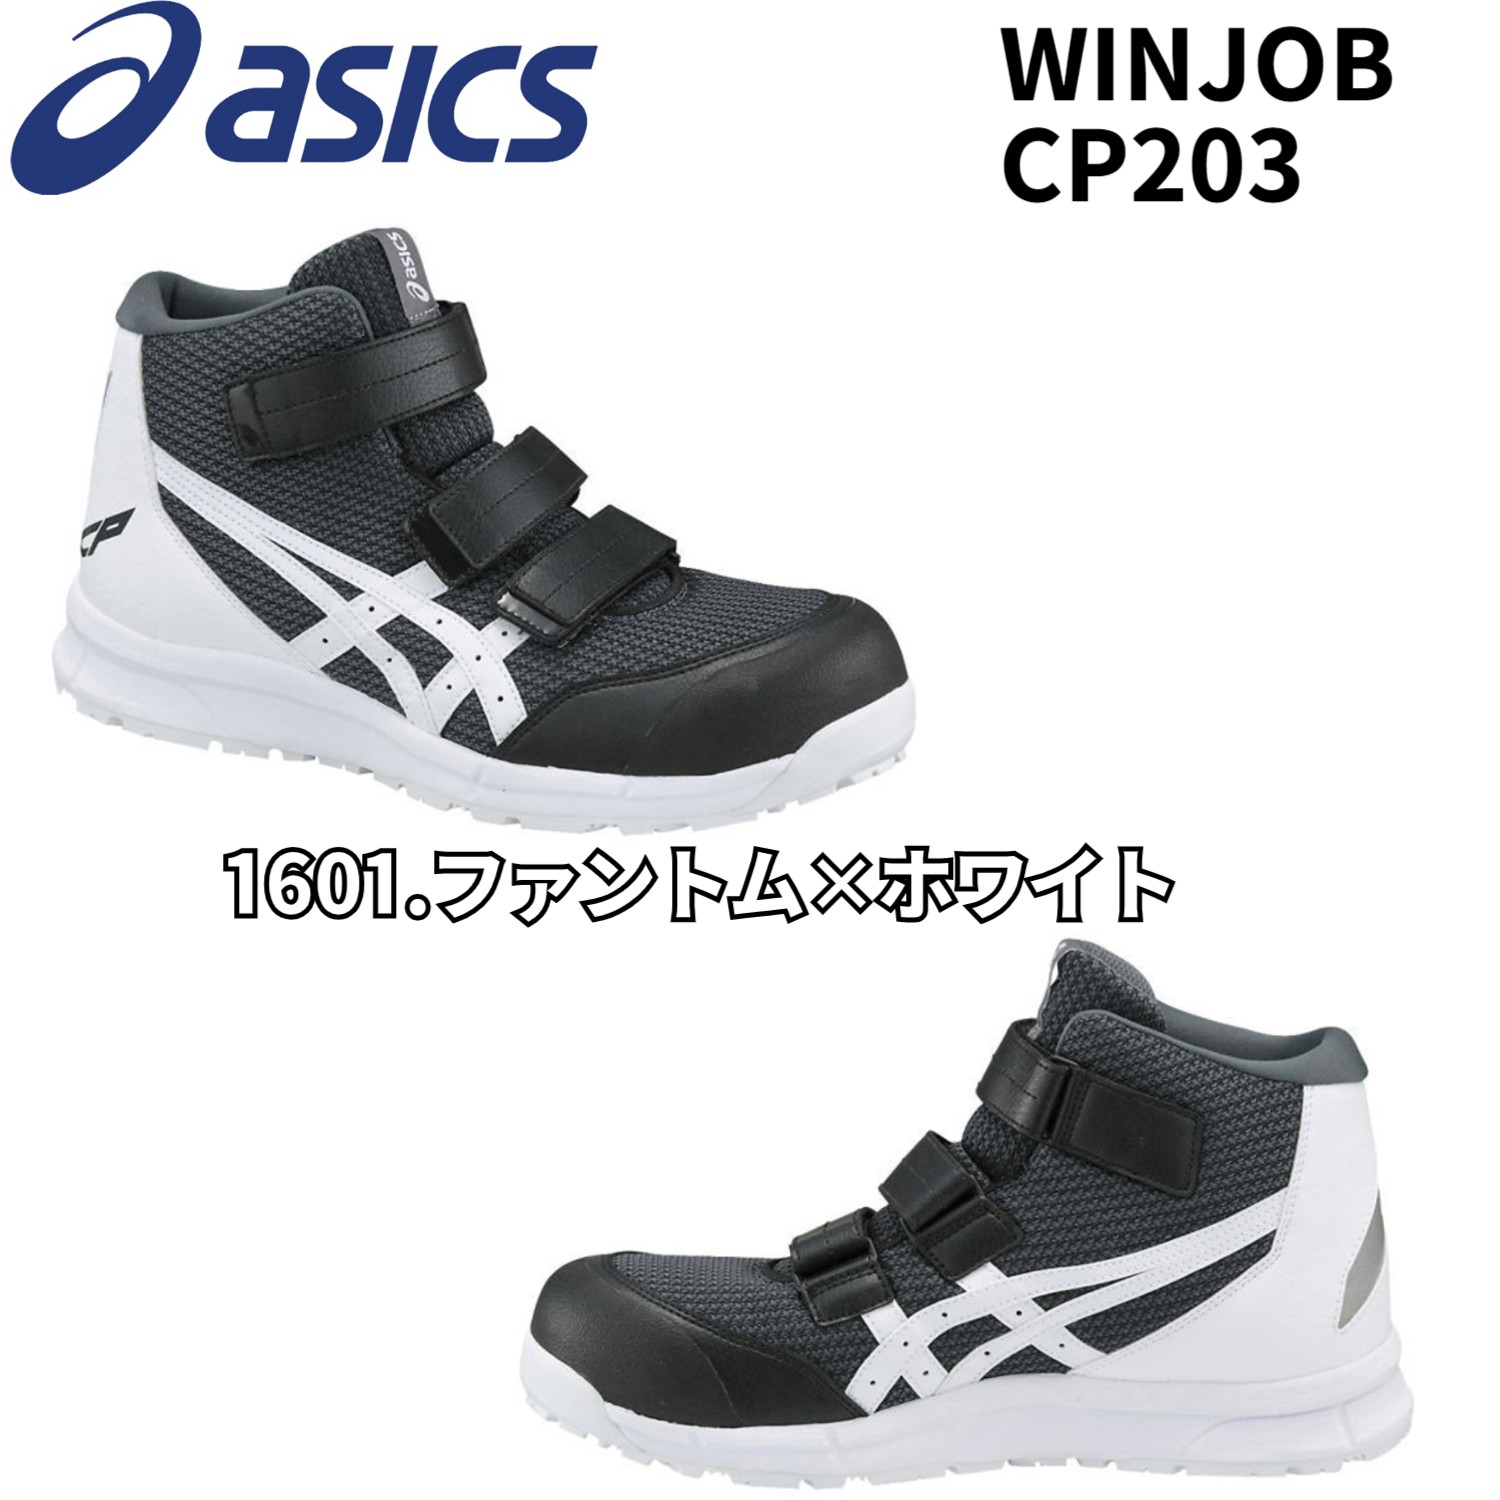 【再入荷】アシックス asics 安全靴 ハイカット ウィンジョブ CP203 ベルトタイプ メッシ...